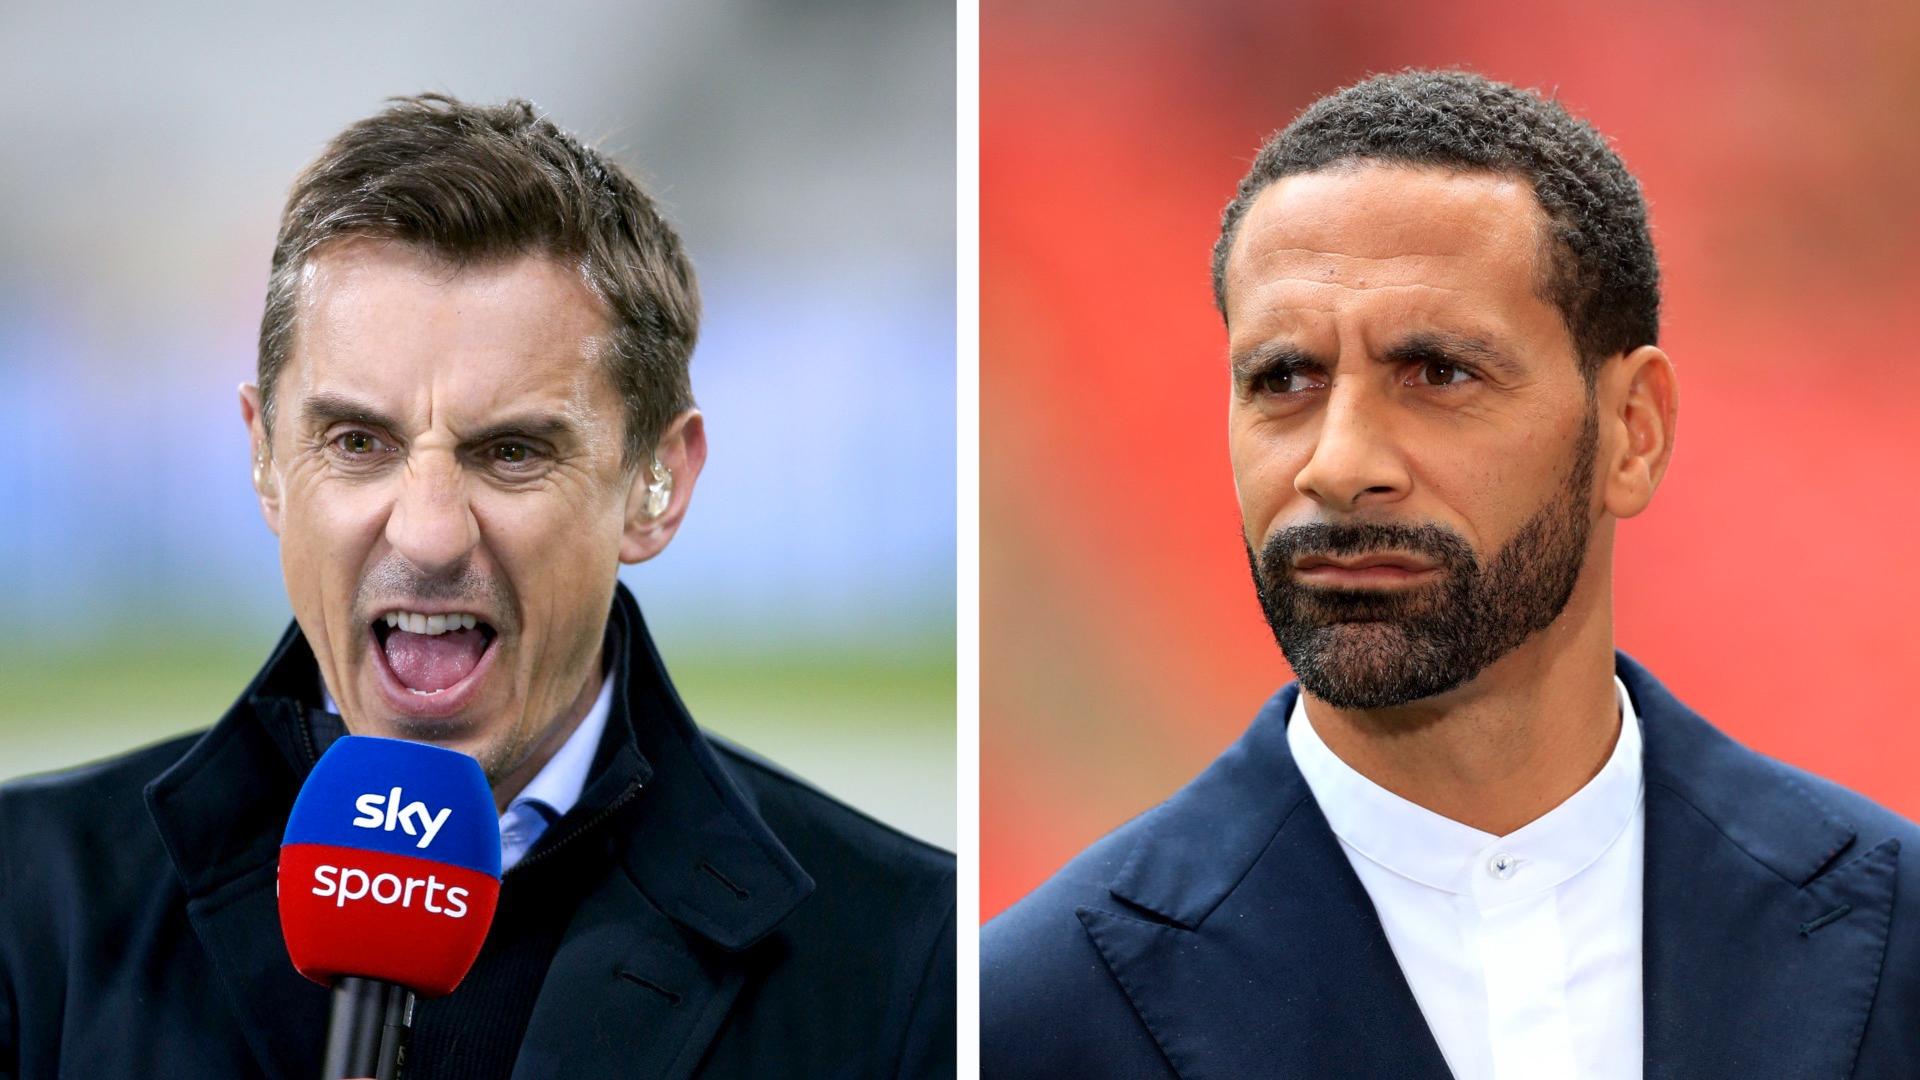 STERKE MENINGER: Rio Ferdinand tror Englands manager Gareth Southgate tenker at han skuffet seg selv. Gary Neville mener det engelske fotballpublikumet ikke kan klandre Englands manager. 